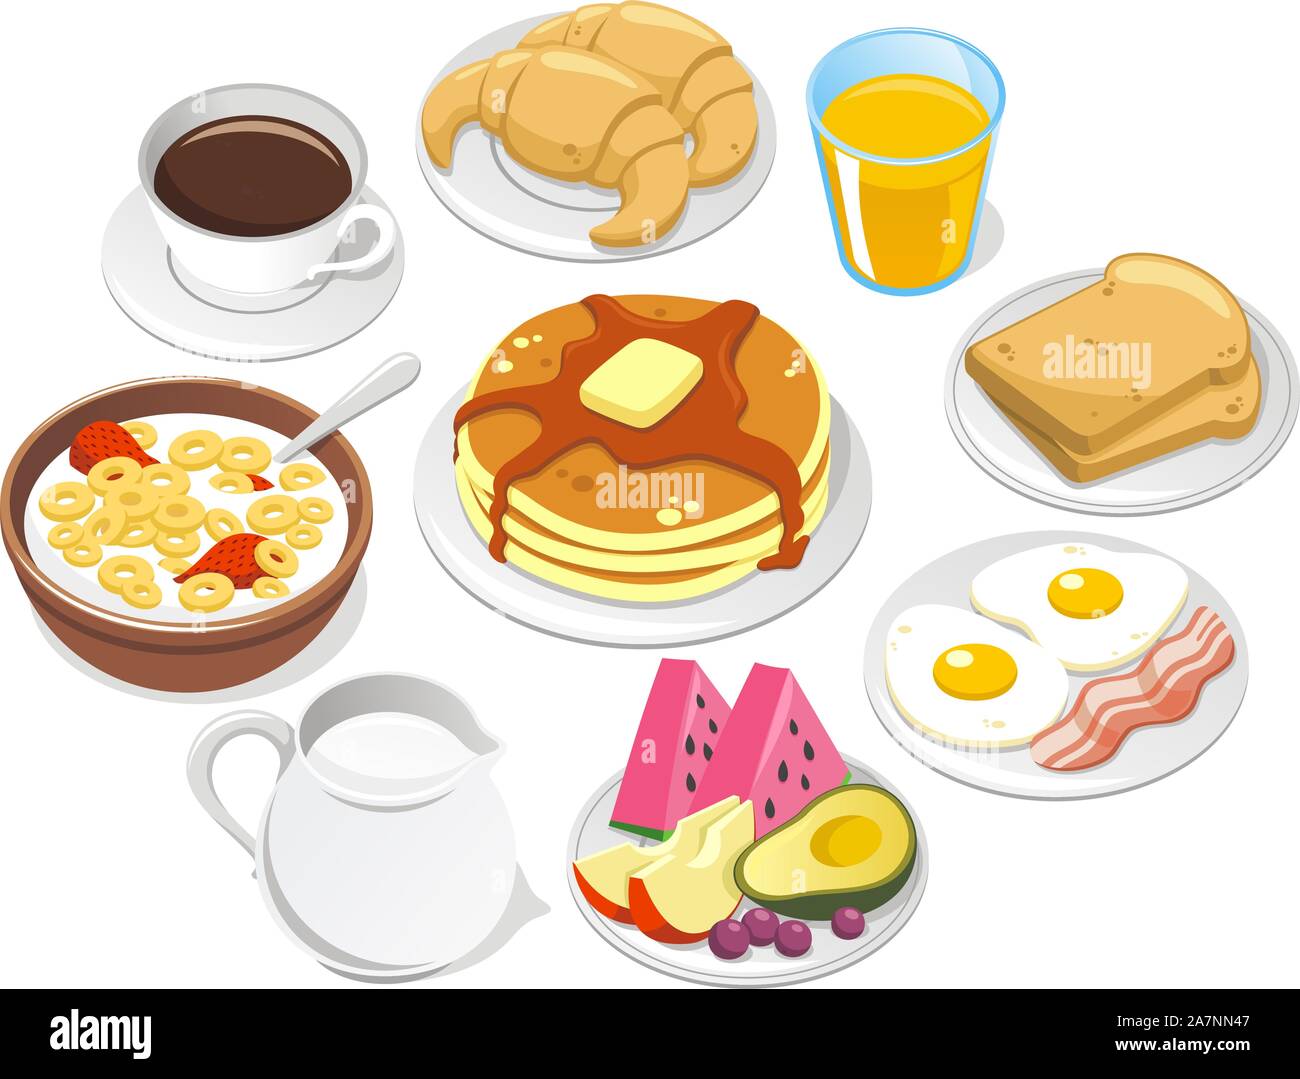 Frühstück, mit Kaffee, Croissant, ein Haufen von Pfannkuchen, Müsli Milch Schüssel, Mil-Flasche, Eier, Speck, Obst, Wassermelone, Pfirsich, Avocado, Traubenmost, Stock Vektor